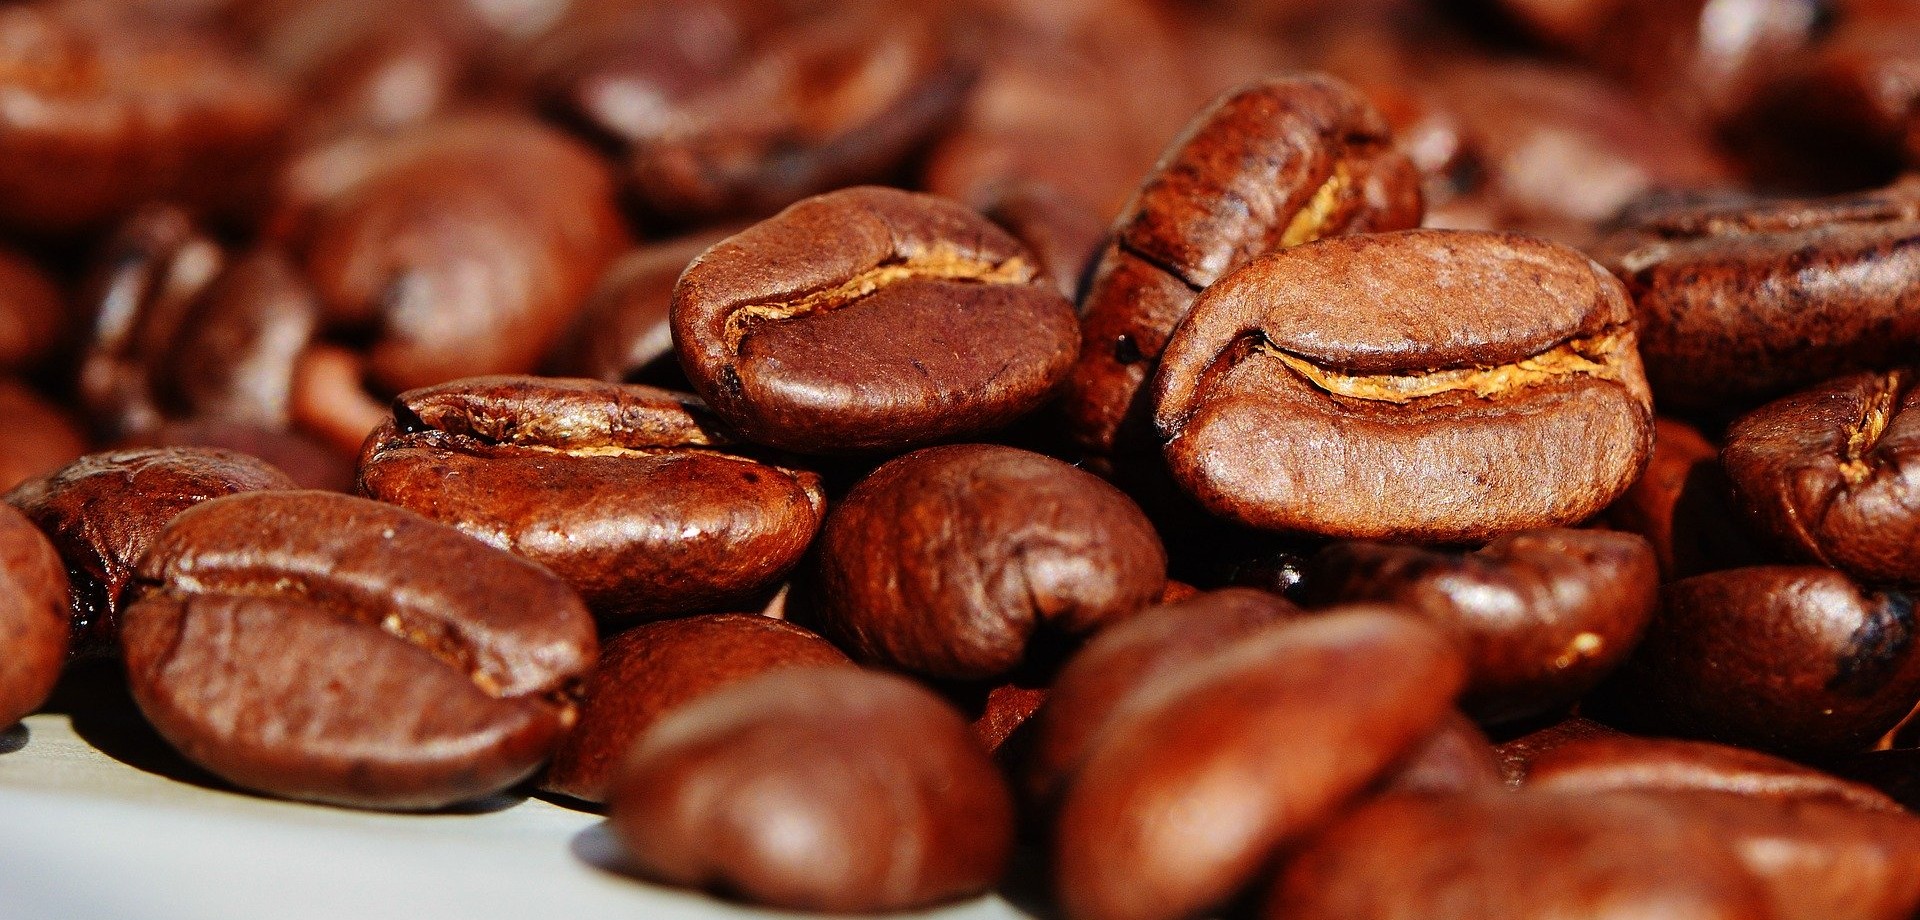 In Nahaufnahme werden ganz viele geröstete Kaffeebohnen gezeigt